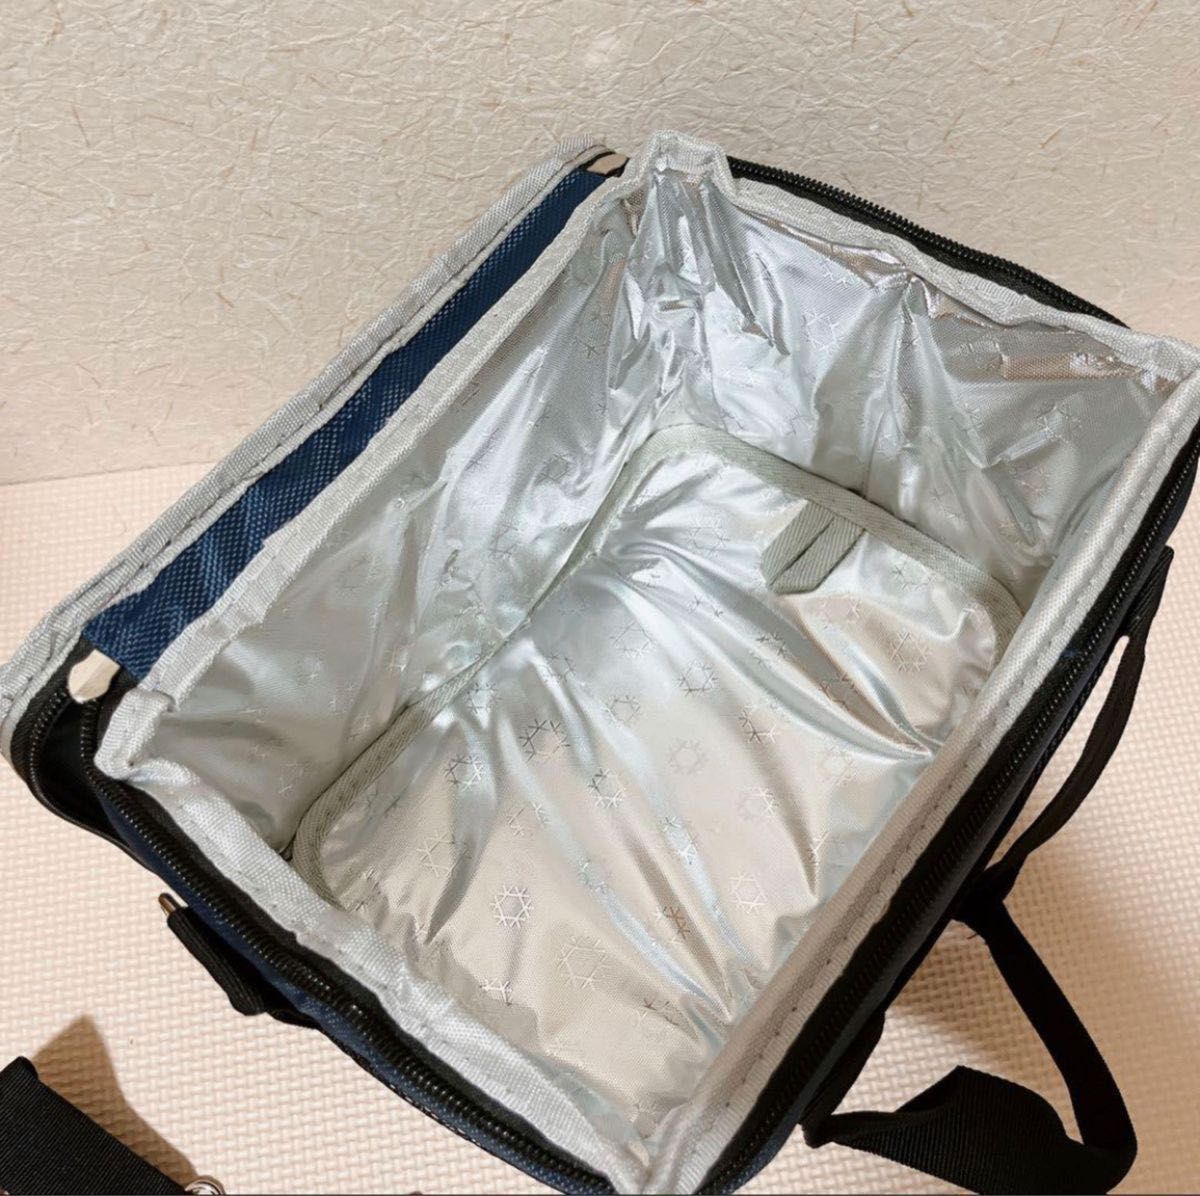 クーラーボックス 保冷バッグ 保温バッグ 断熱バッグ ソフト クーラーバッグ 保冷 保温 収納バッグ 大容量 防水 折りたたみ式